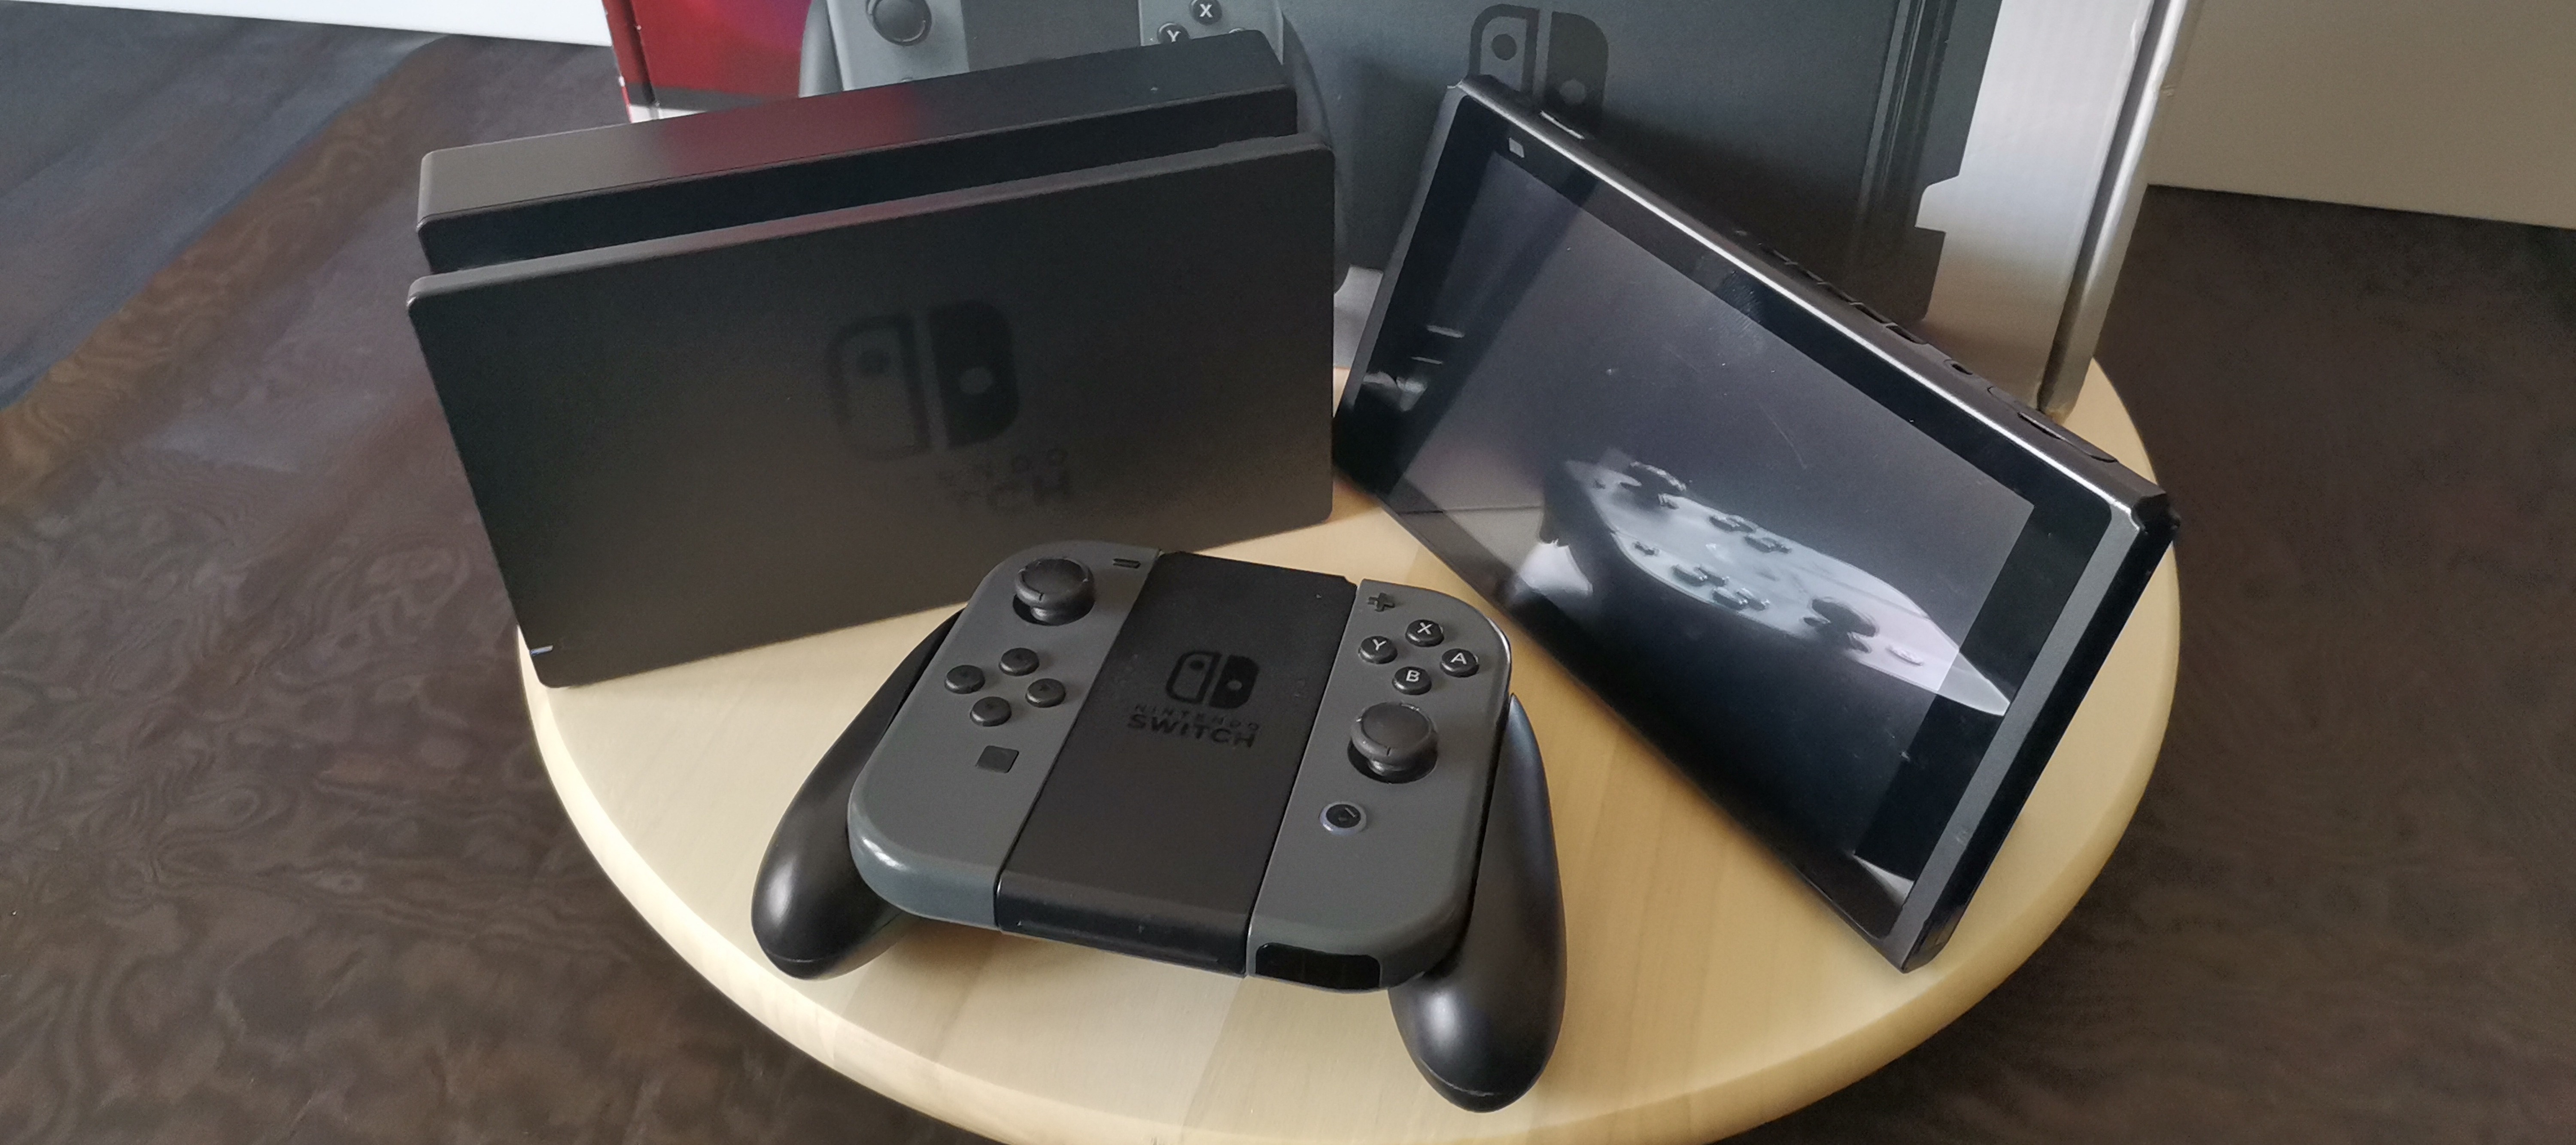 Nintendo Switch getestet - Ist diese Konsole 2021 sinnvoll?